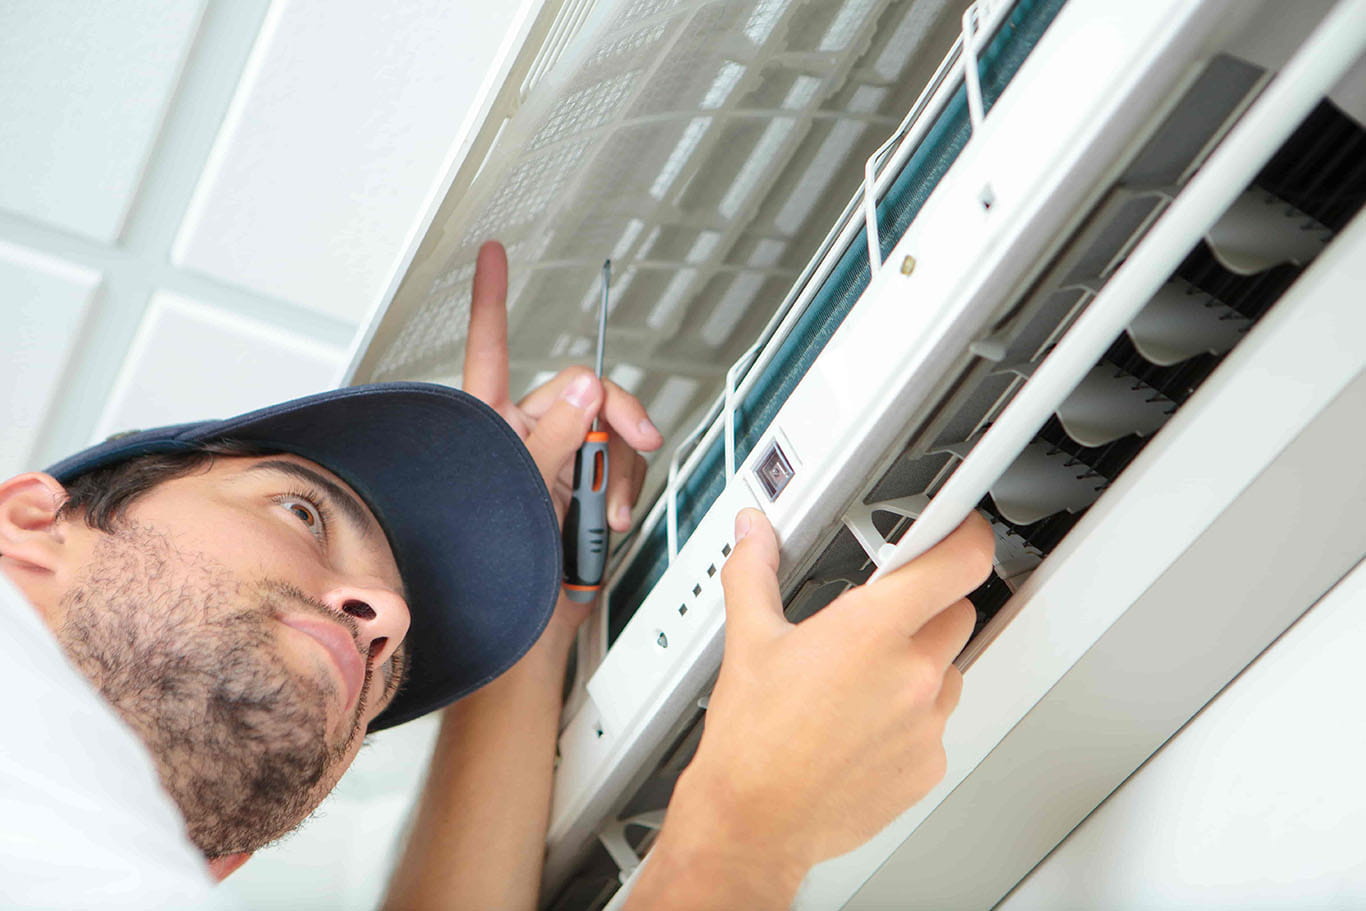 Dịch vụ sửa chữa bảo trì tháo lắp máy lạnh tại nhà 